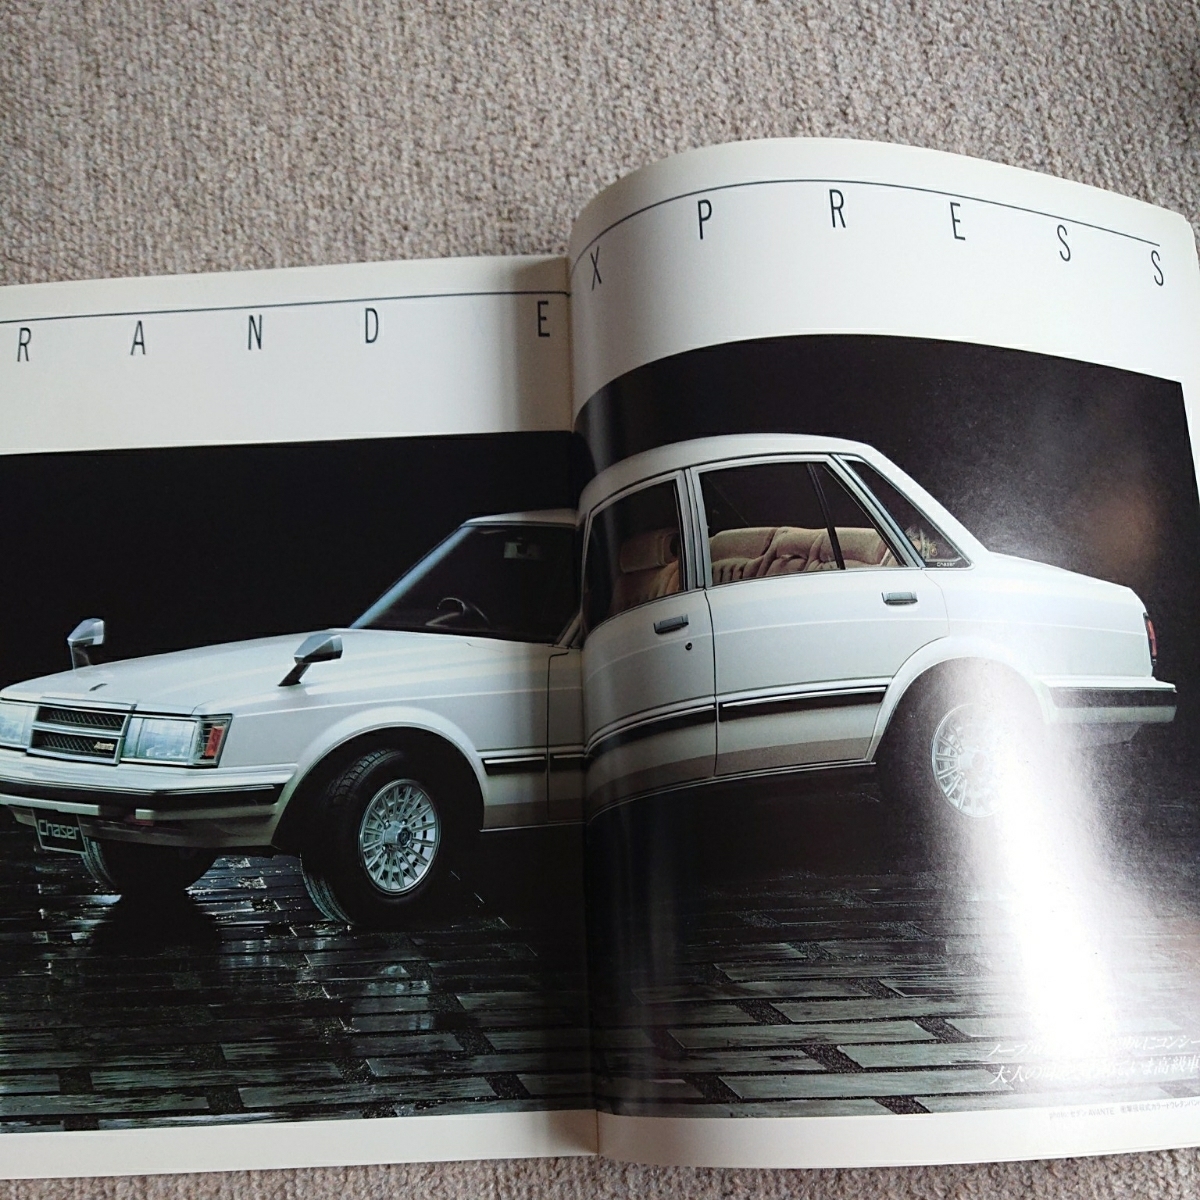  снят с производства, Showa 57 год 10 месяц выпуск, модель E-GX61, Toyota Chaser,34 страница, основной каталог.